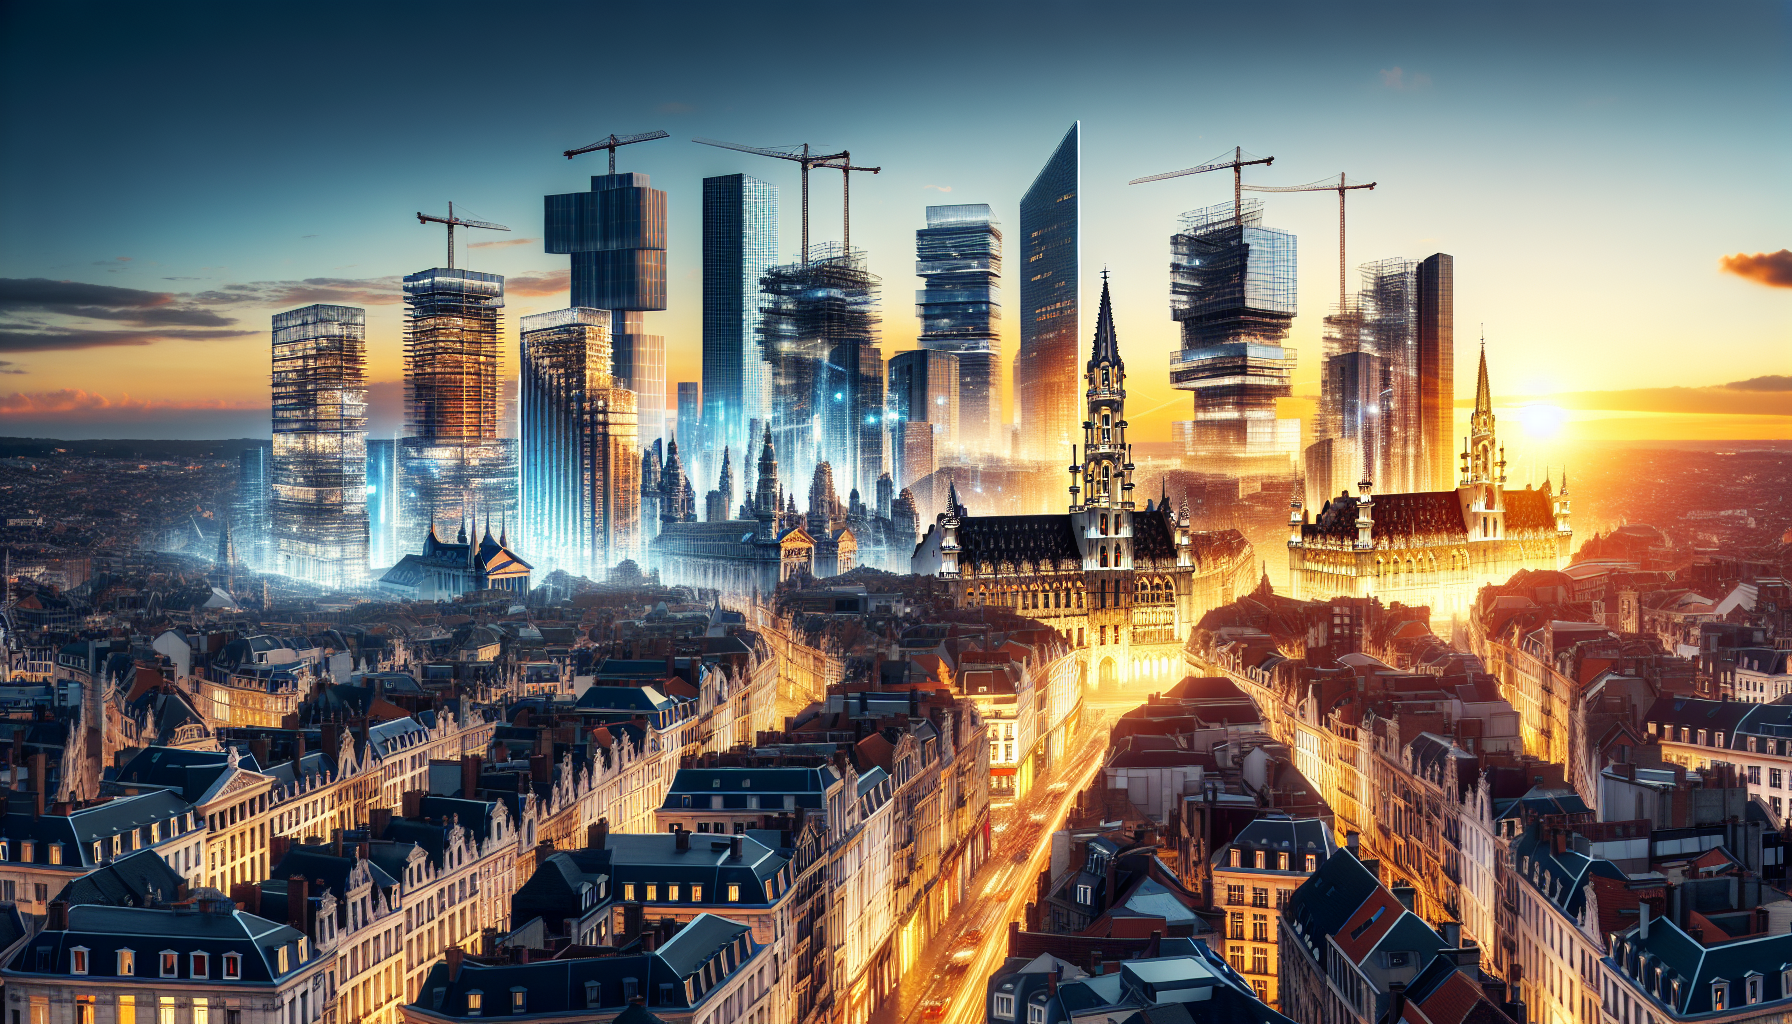 découvrez les derniers projets immobiliers qui façonnent le visage de bruxelles et redessinent son horizon urbain. ne manquez pas les transformations en cours dans la capitale belge.